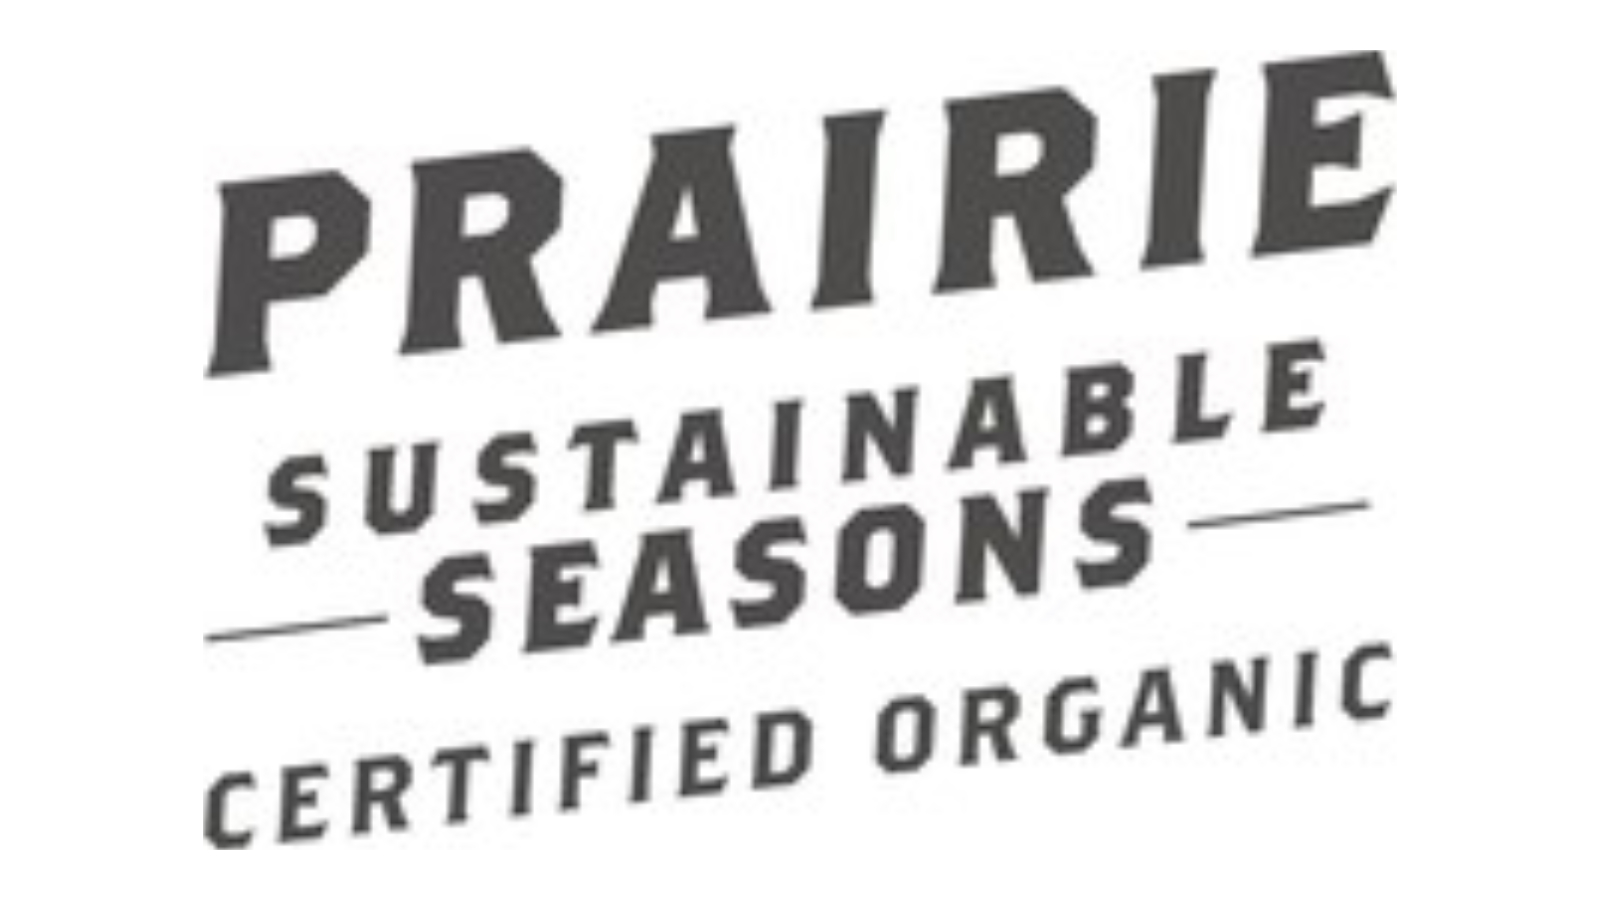 Prairie sustainable seasons